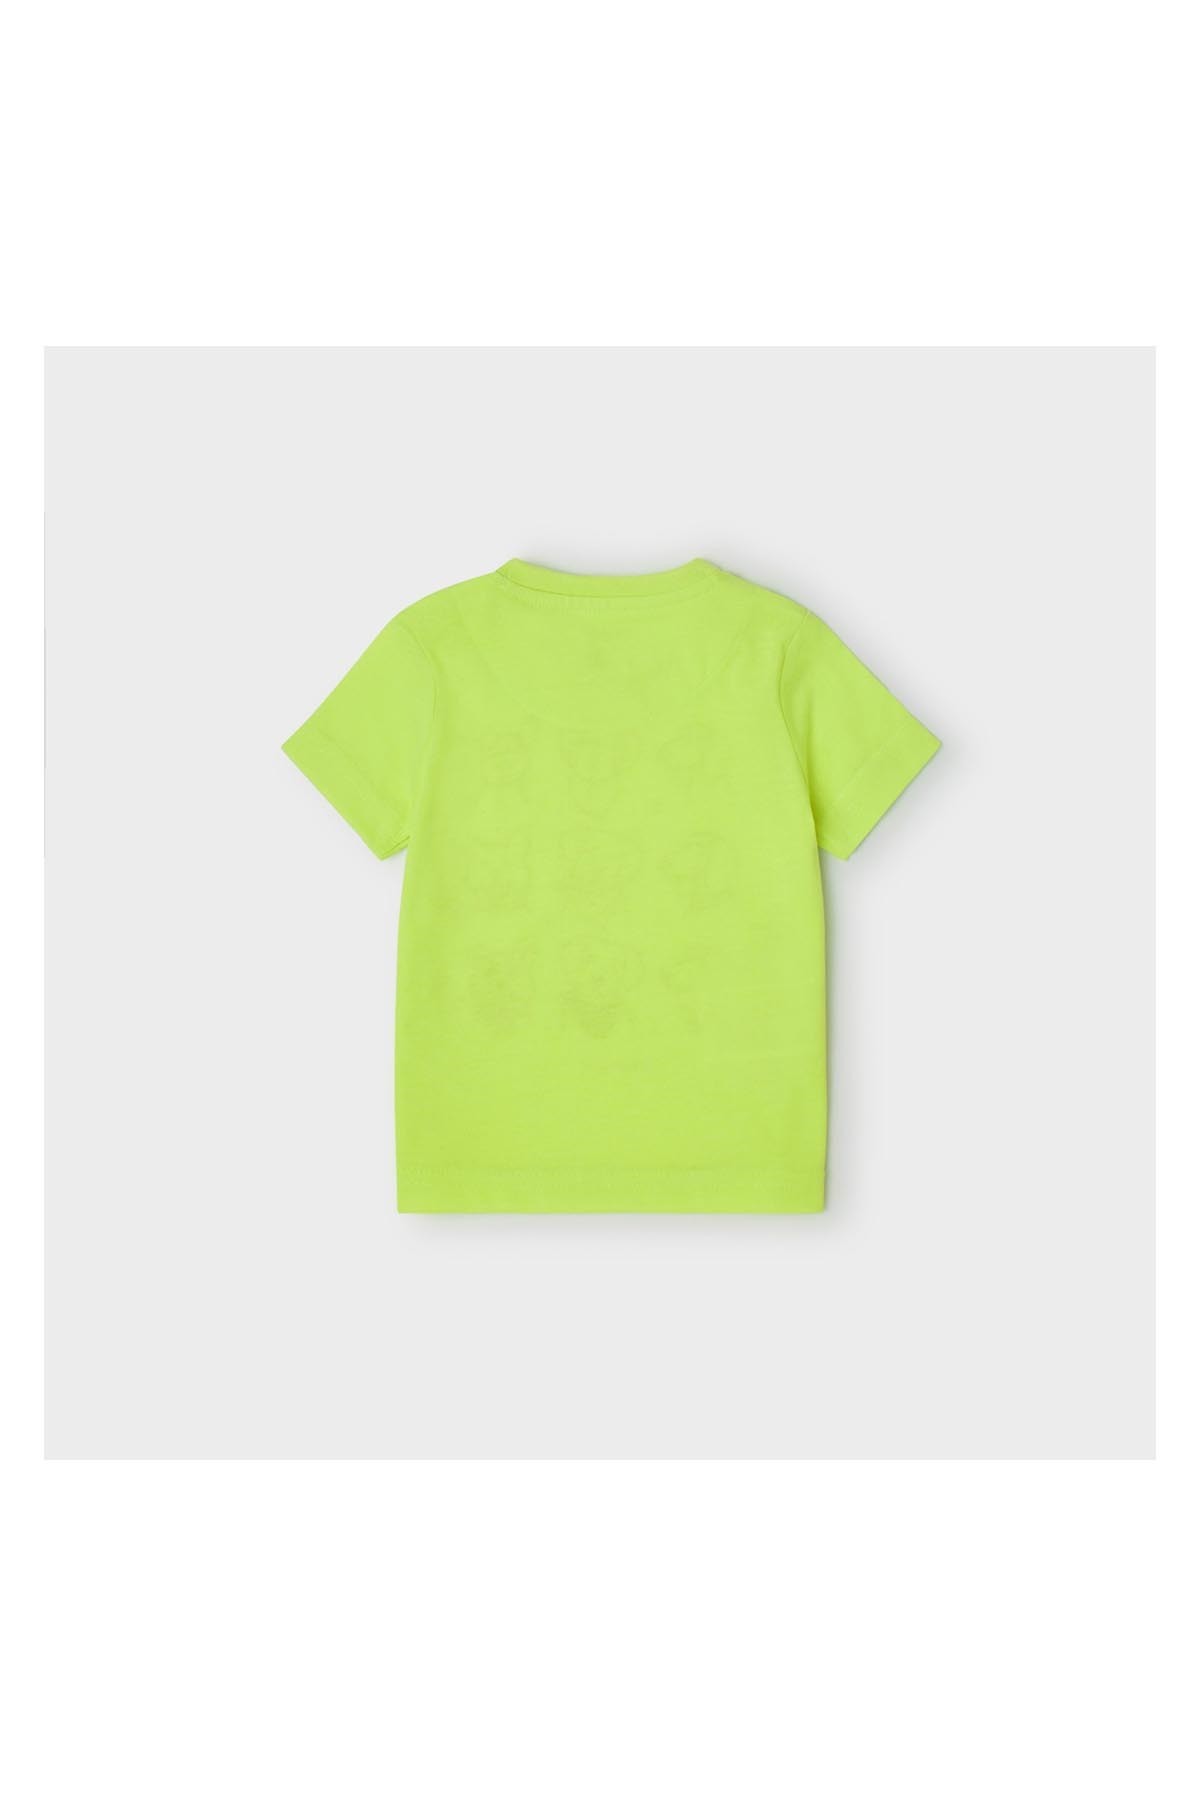 Mayoral Tshirt Kısa Kol Deseneli Yeşil